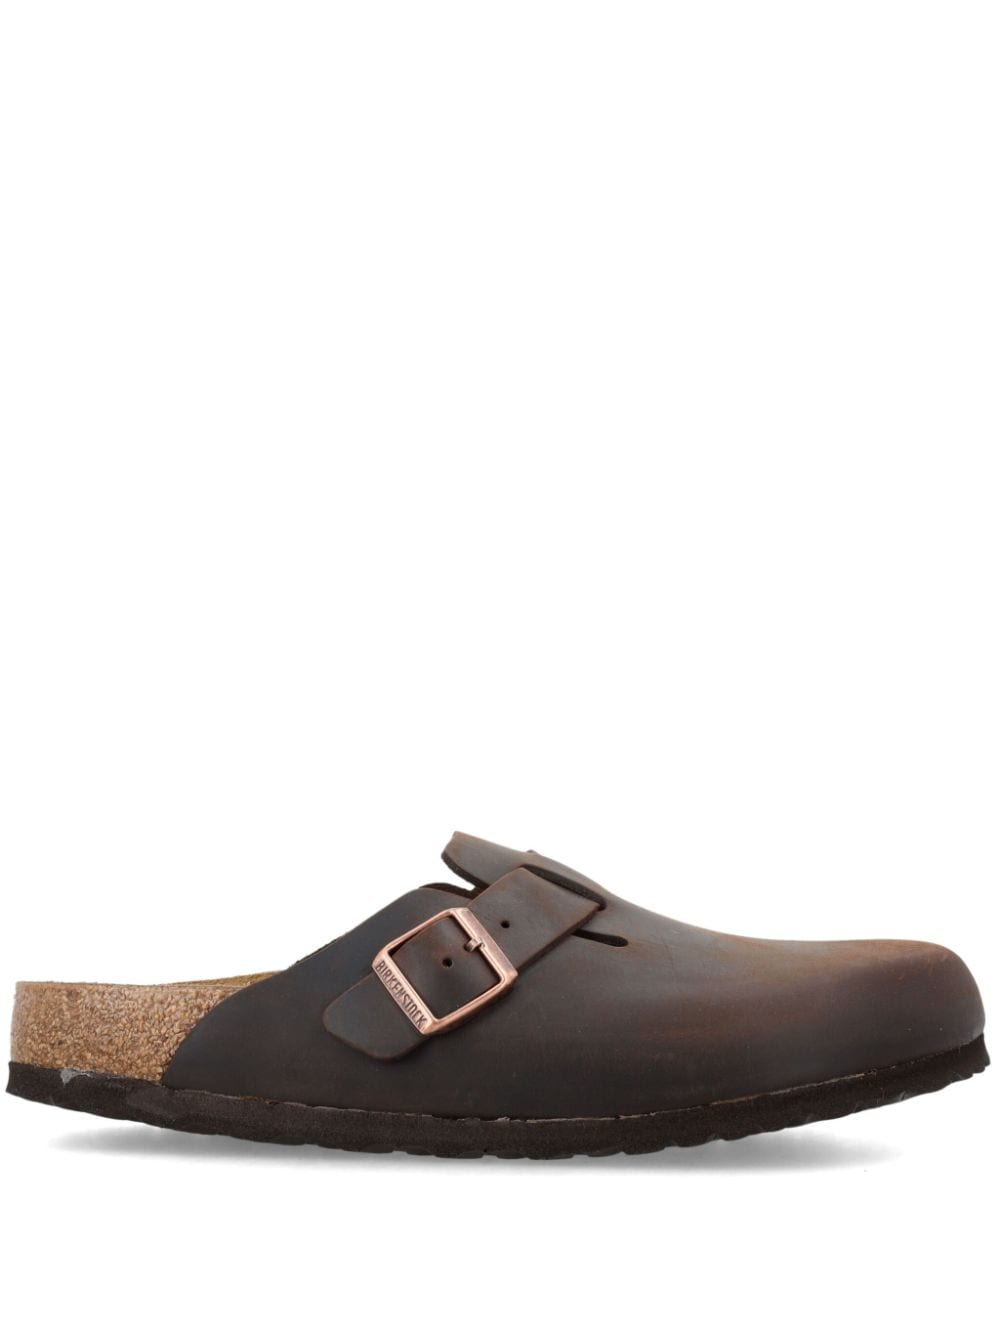 Birkenstock Boston leather sandals - Brown von Birkenstock